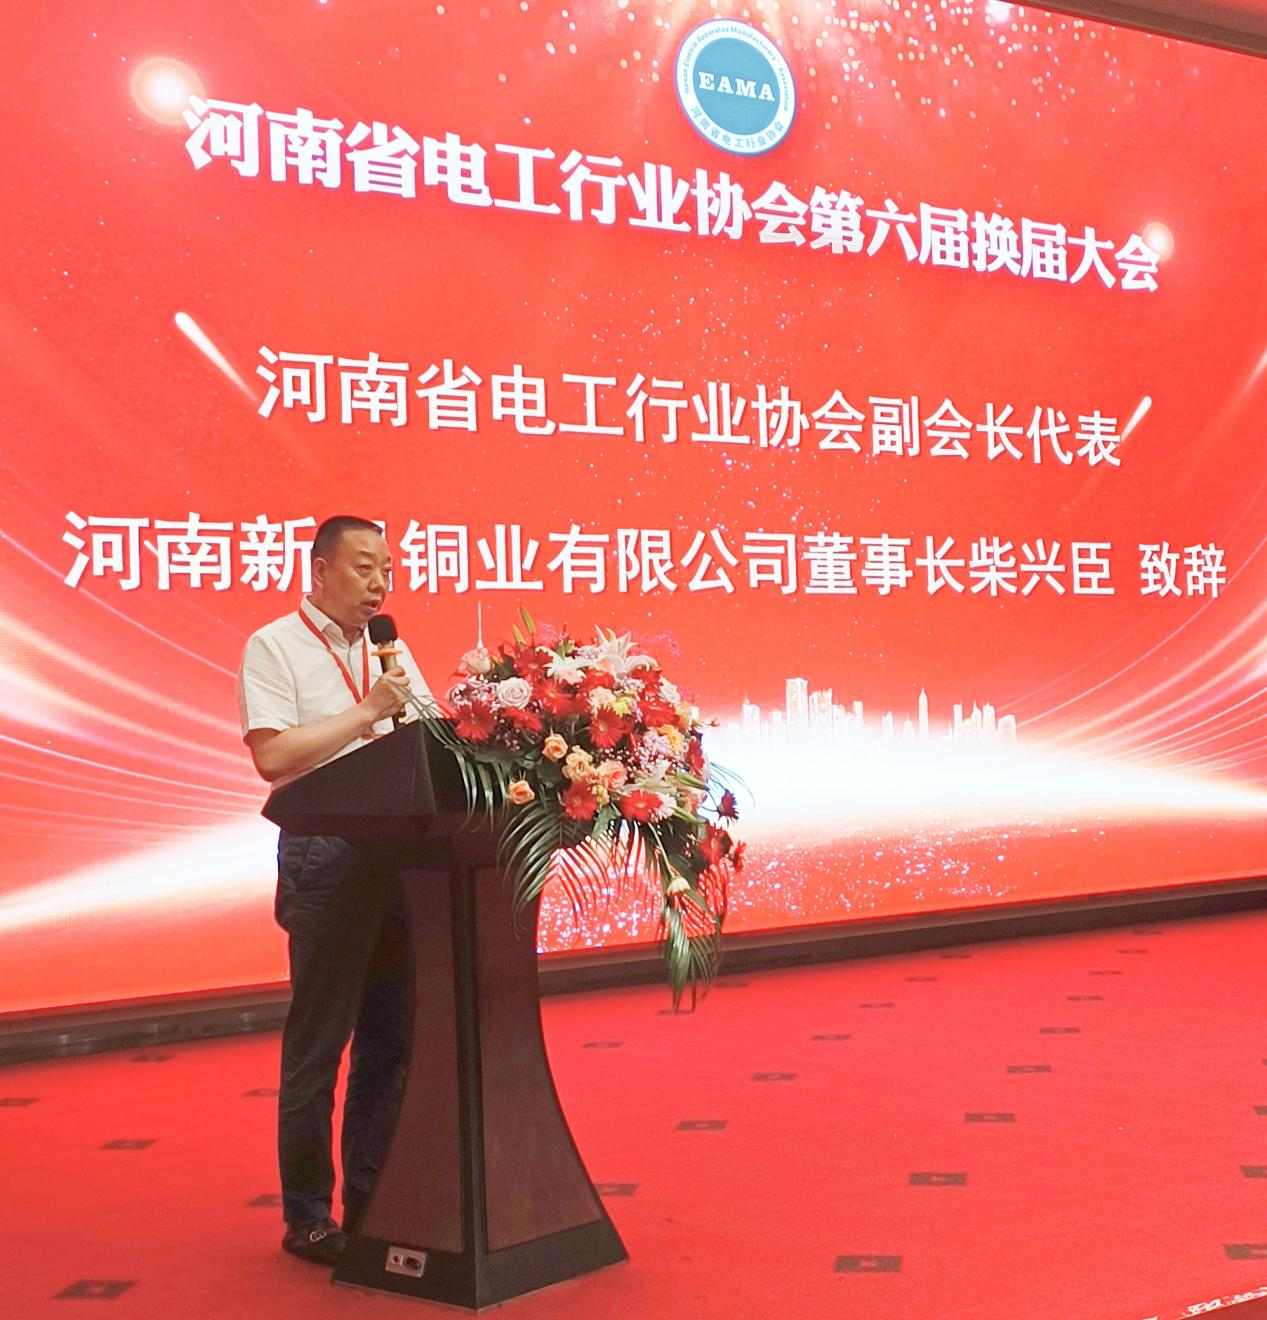 新昌铜业集团获选河南省电工行业协会副会长单位